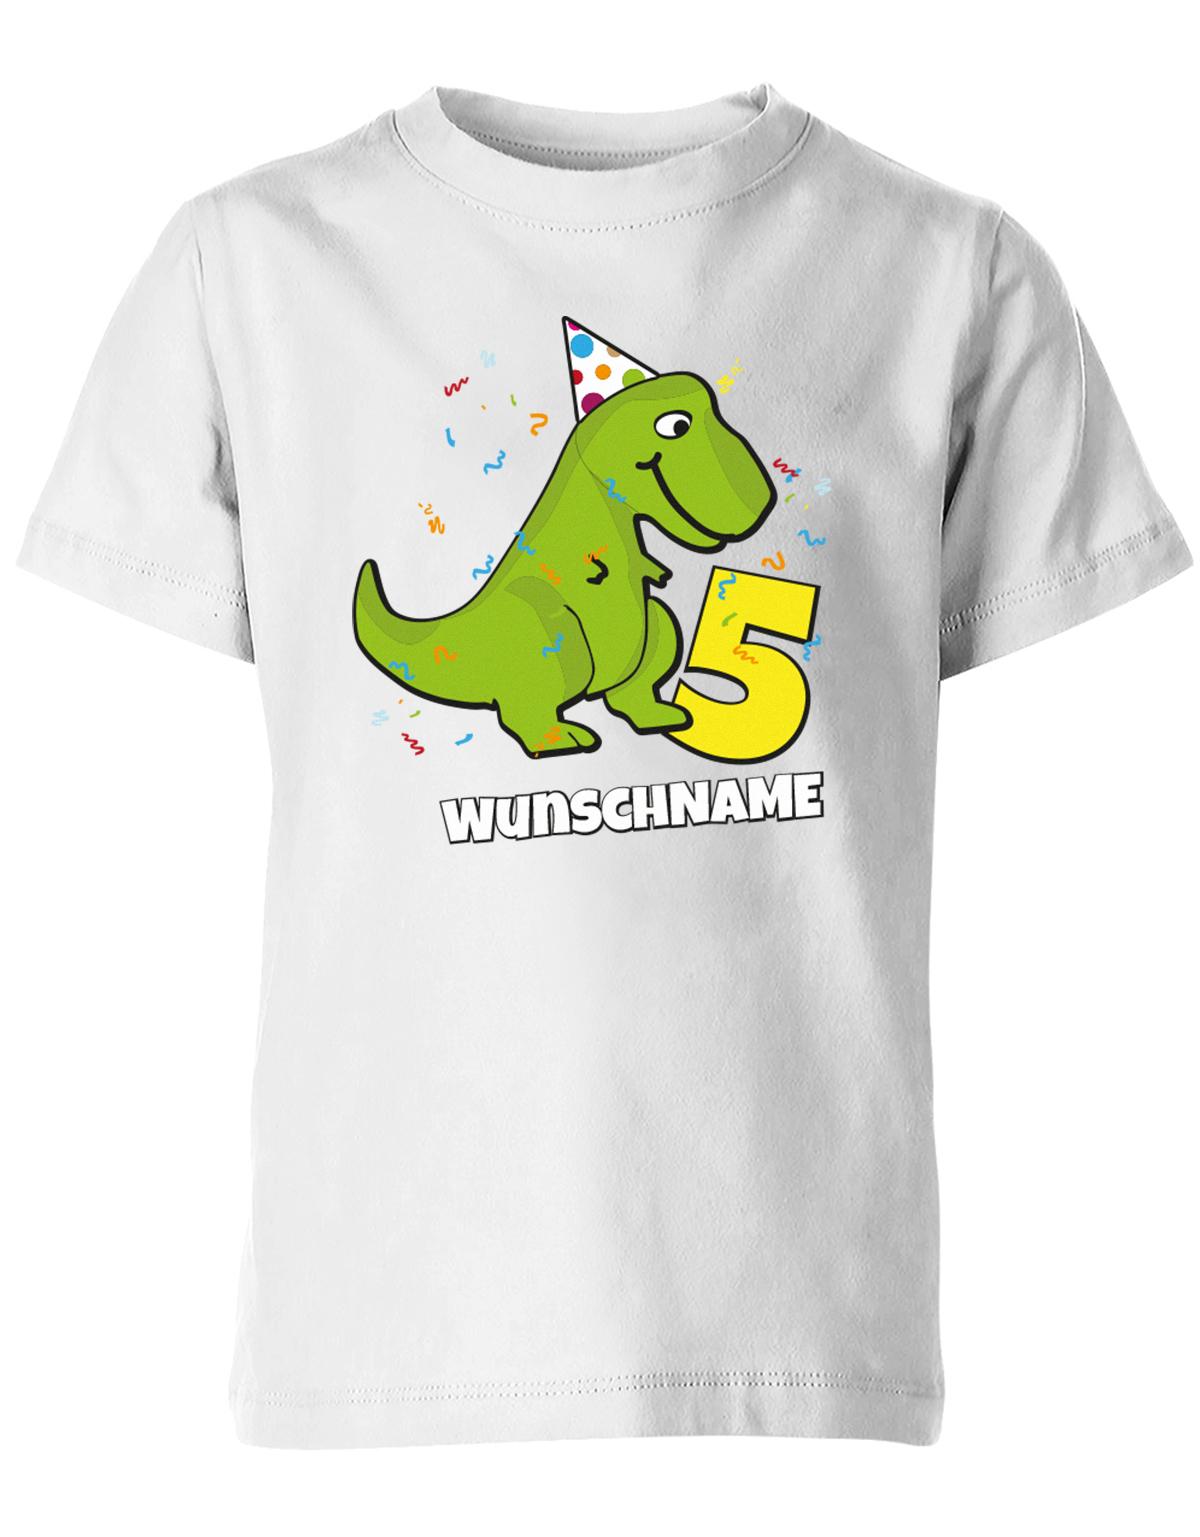 ich-bin-5-Dinosaurier-t-rex-wunschname-geburtstag-kinder-shirt-weiss